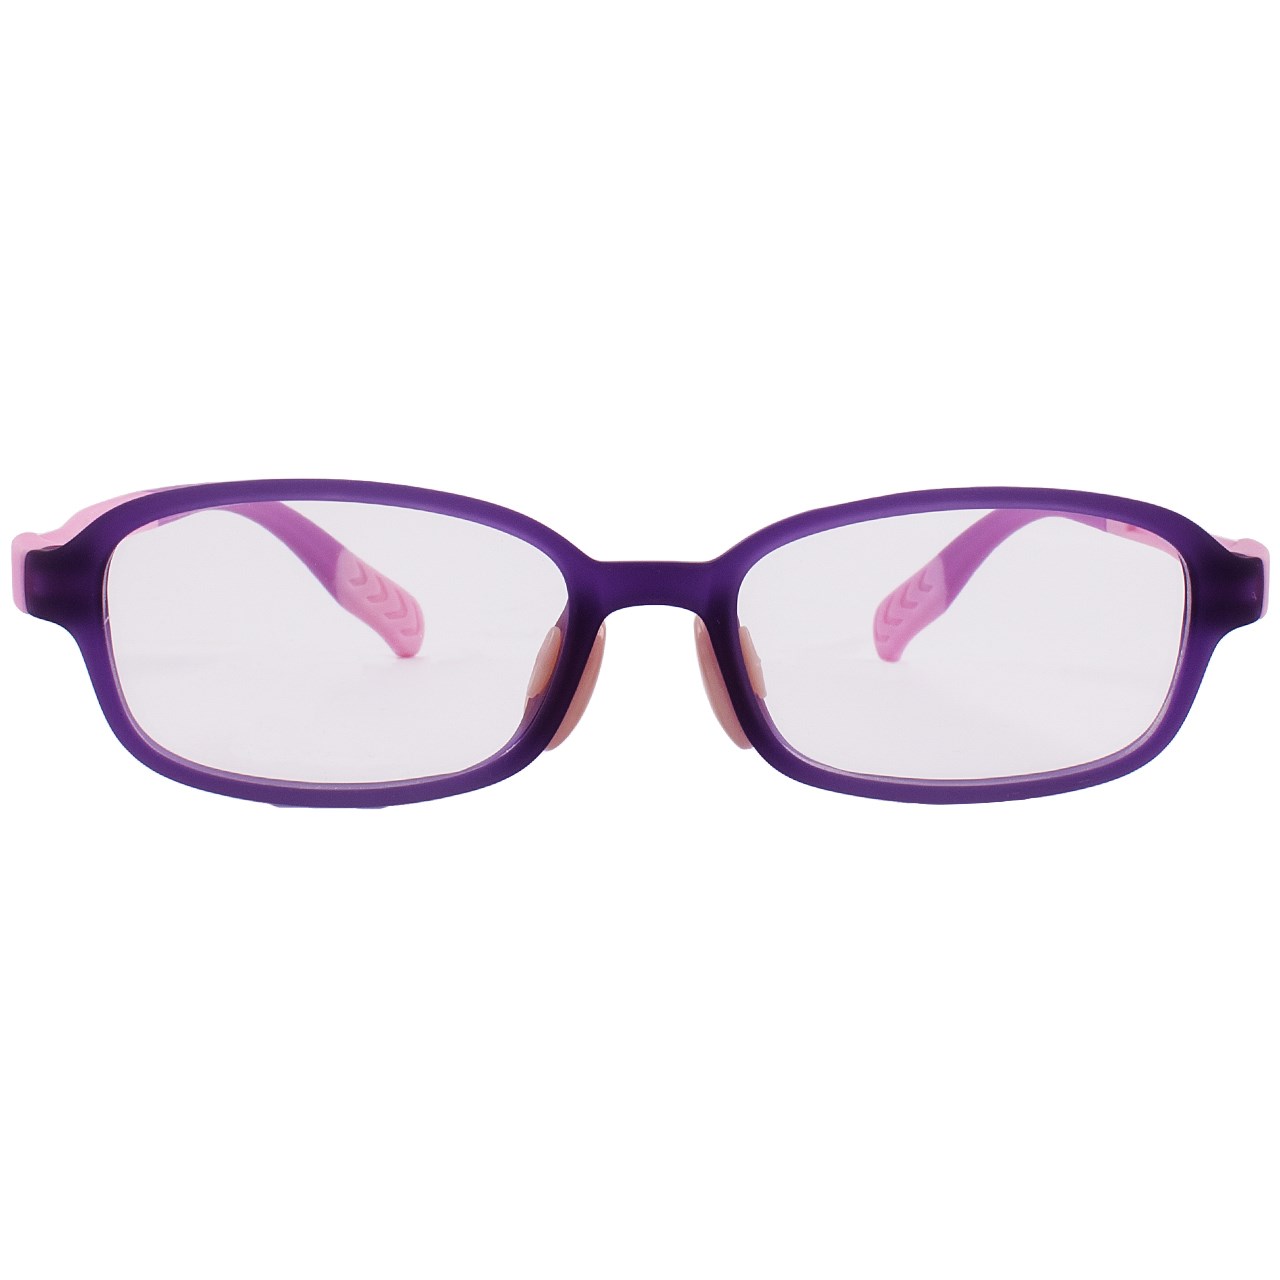 فریم عینک بچگانه واته مدل 2100C2